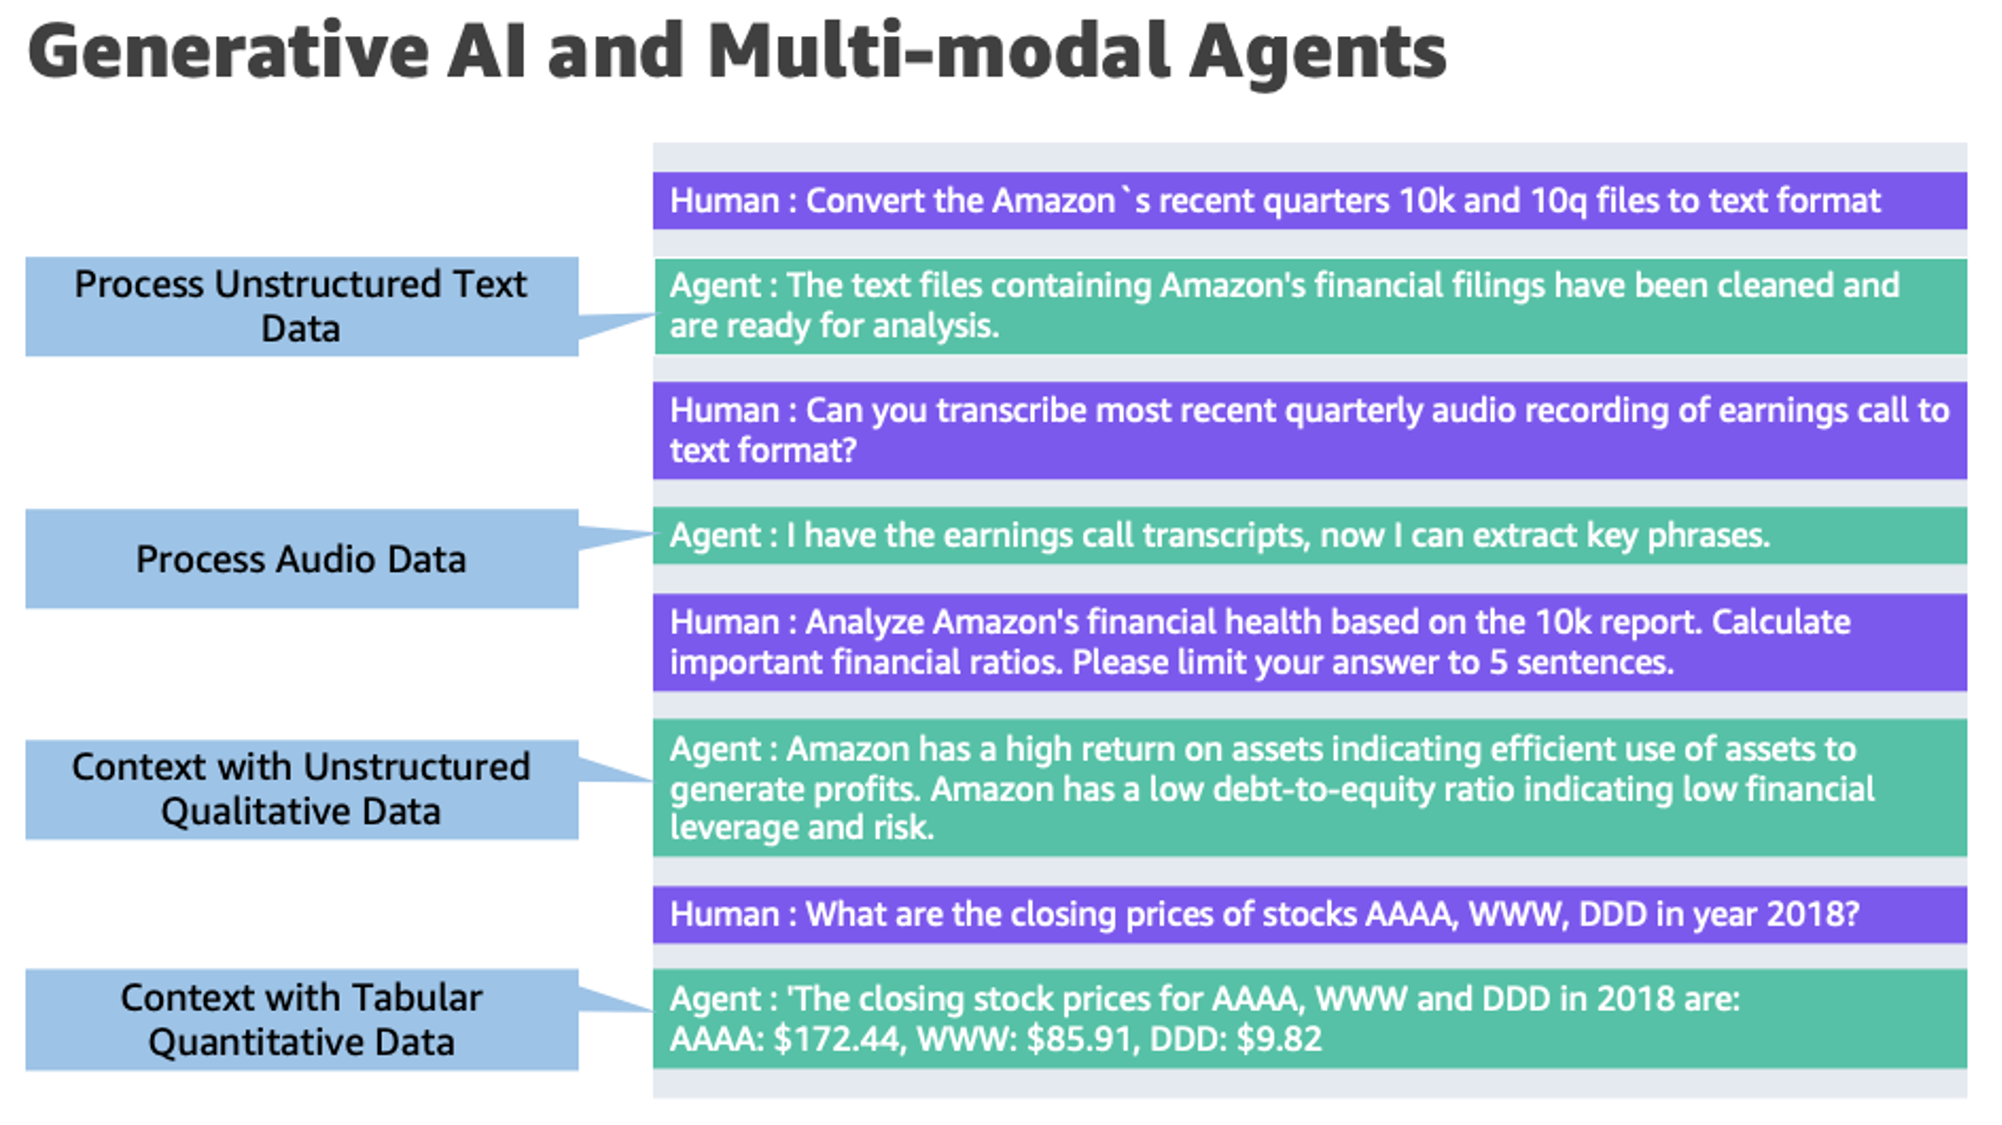 هوش مصنوعی و عوامل چند وجهی در AWS: کلید باز کردن ارزش جدید در بازارهای مالی | خدمات وب آمازون هوش داده پلاتو بلاک چین. جستجوی عمودی Ai.